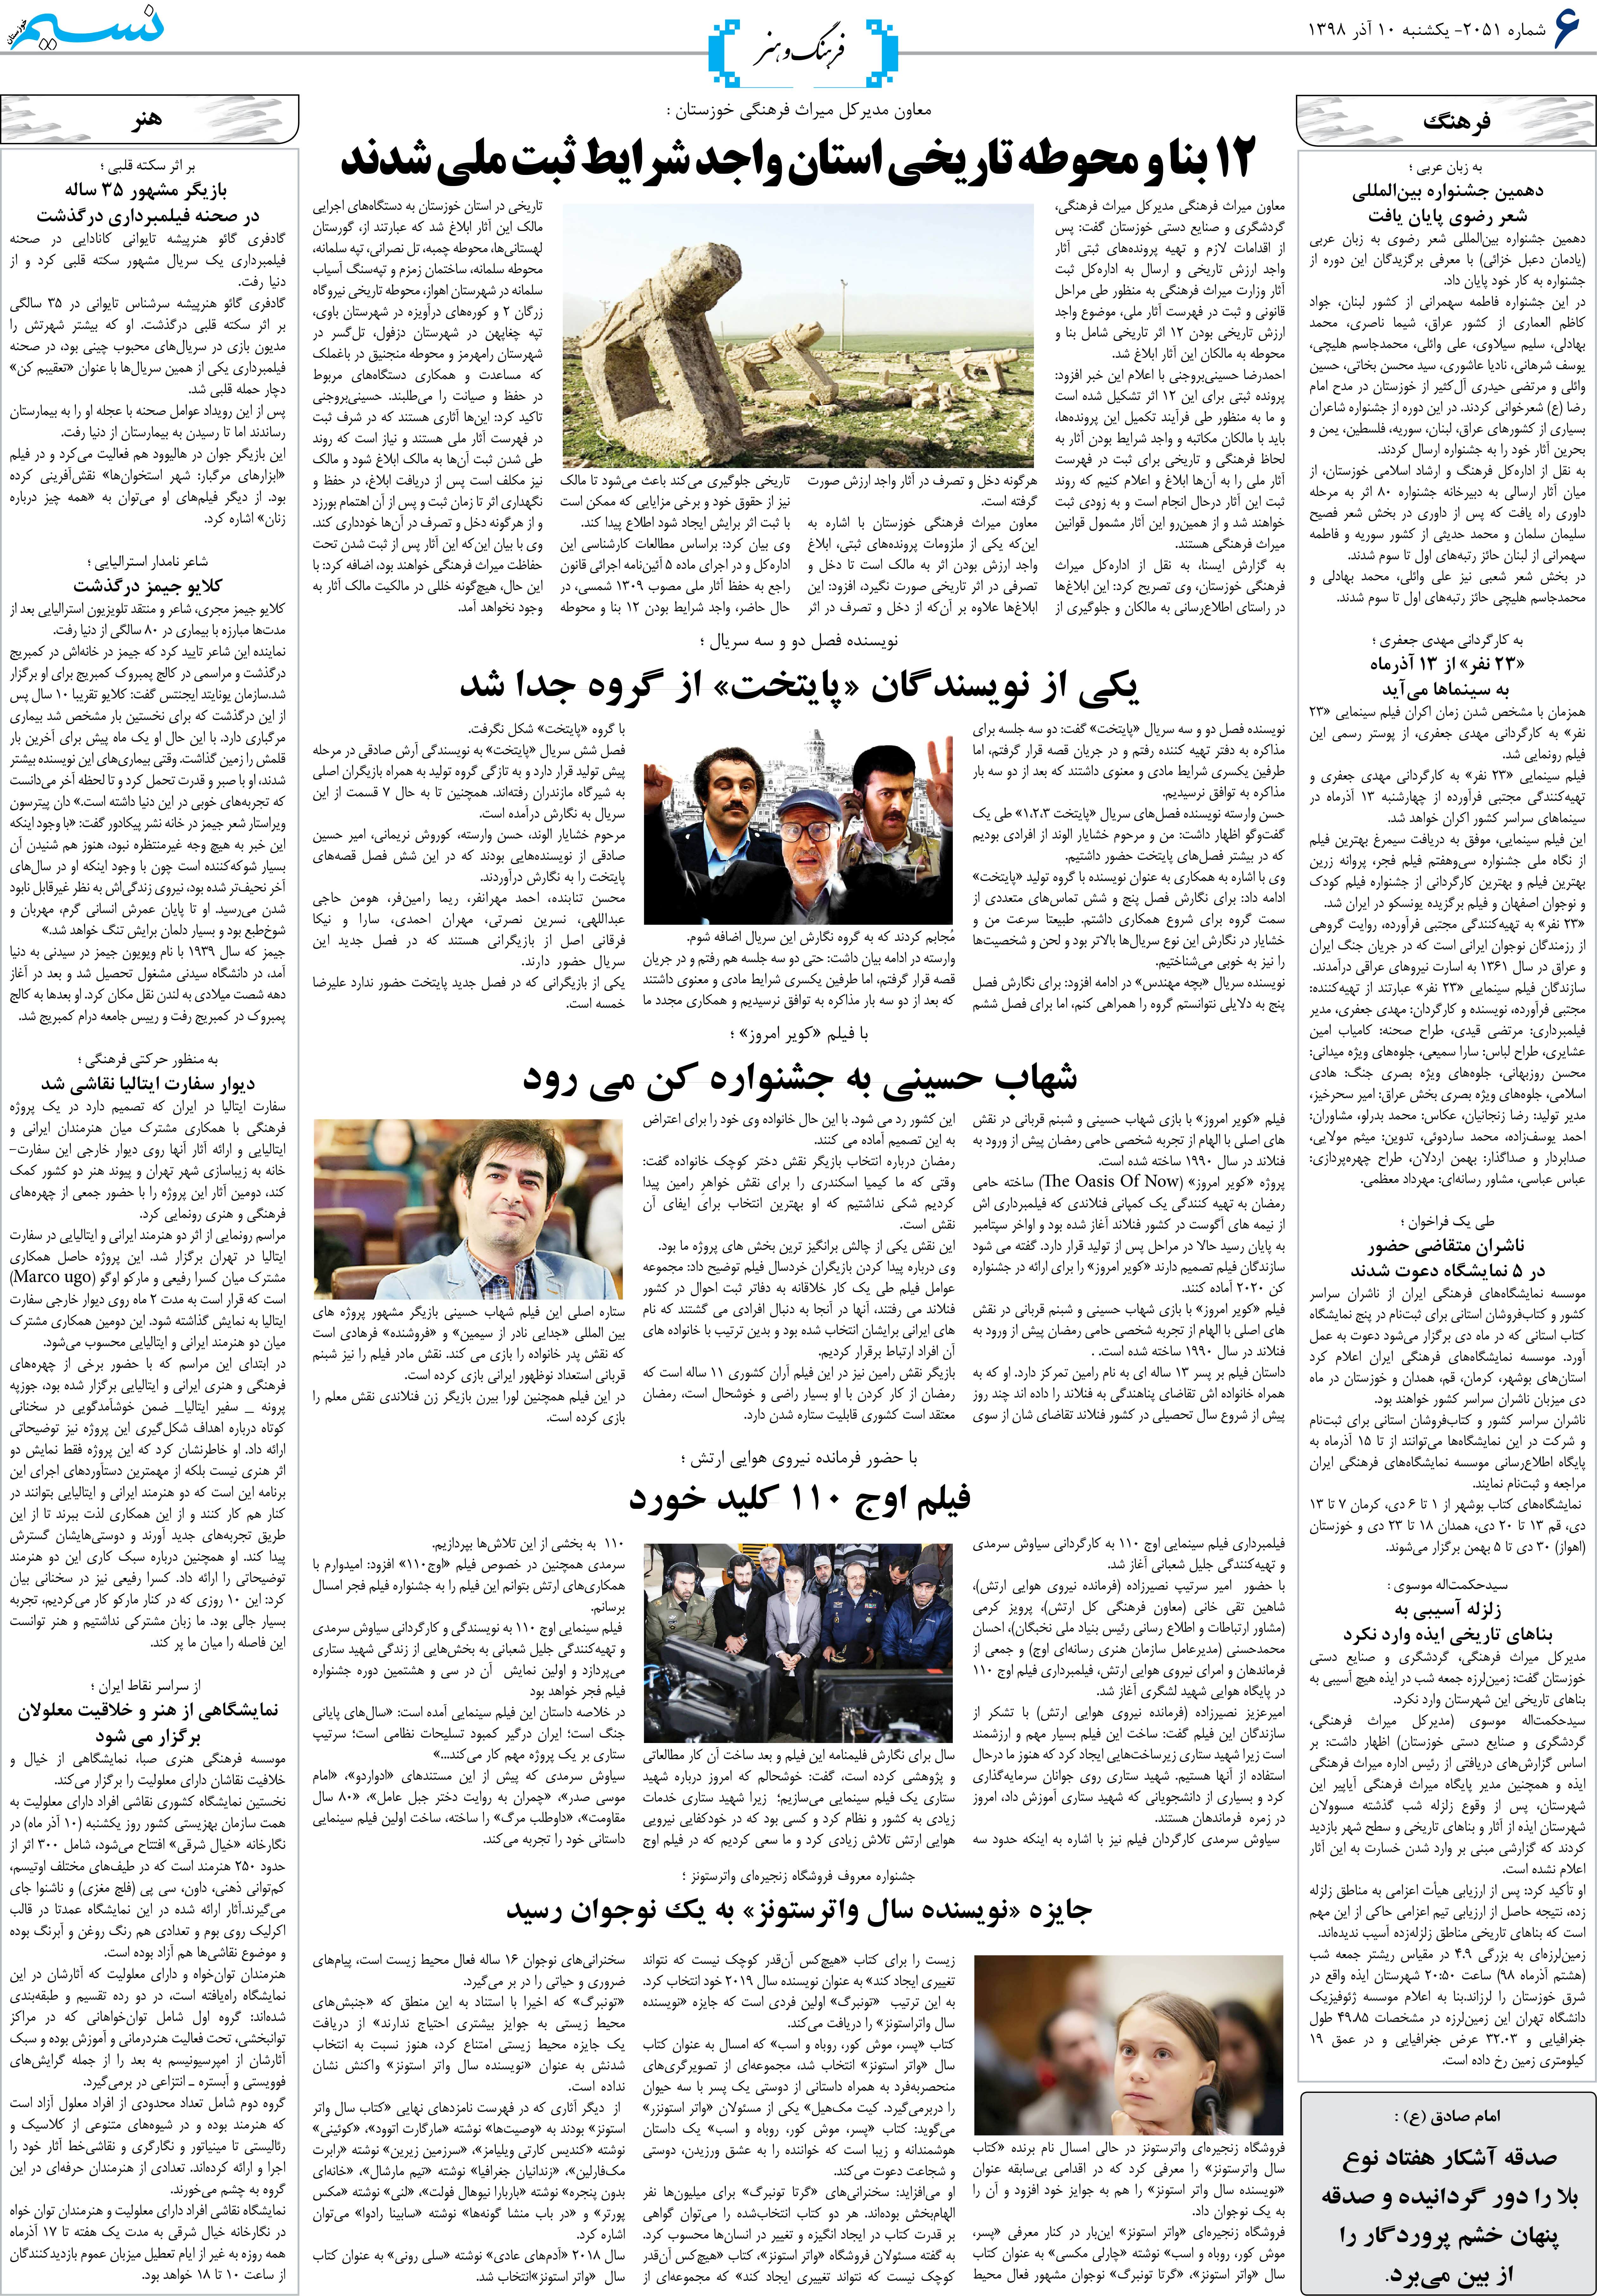 صفحه فرهنگ و هنر روزنامه نسیم شماره 2051